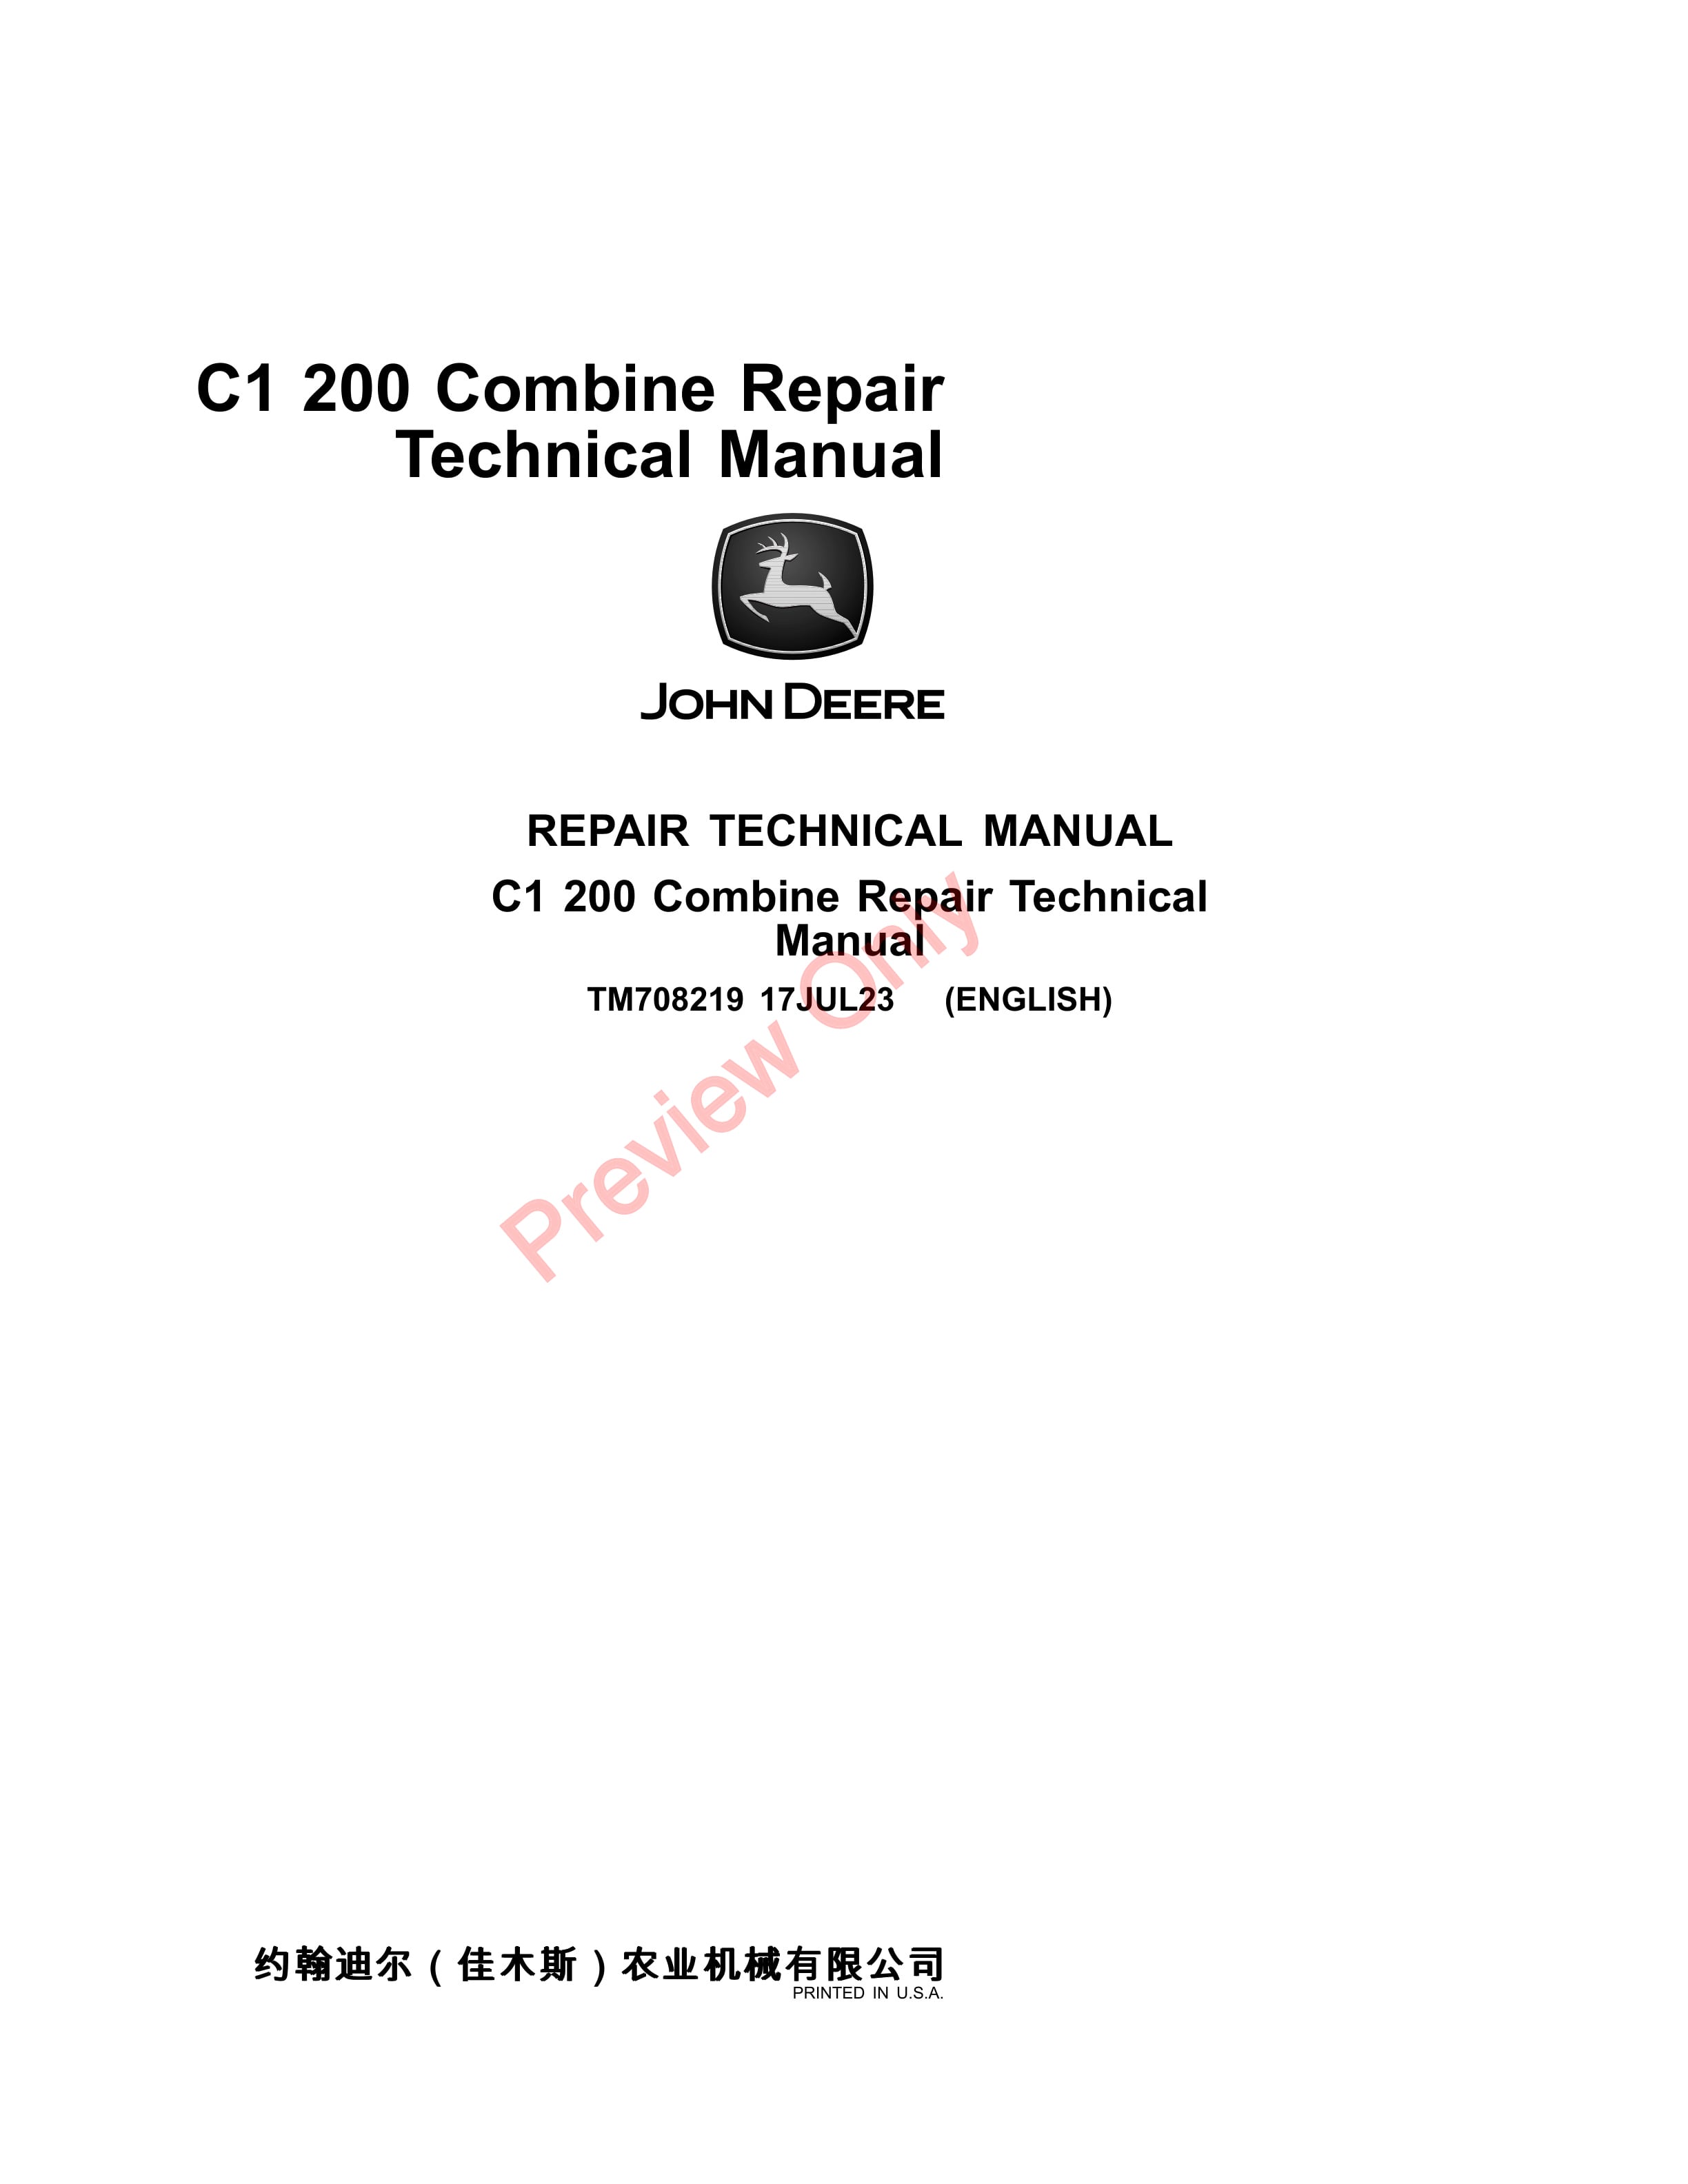 John Deere C1 200 Combine Repair Technical Manual TM708219 17JUL23 1